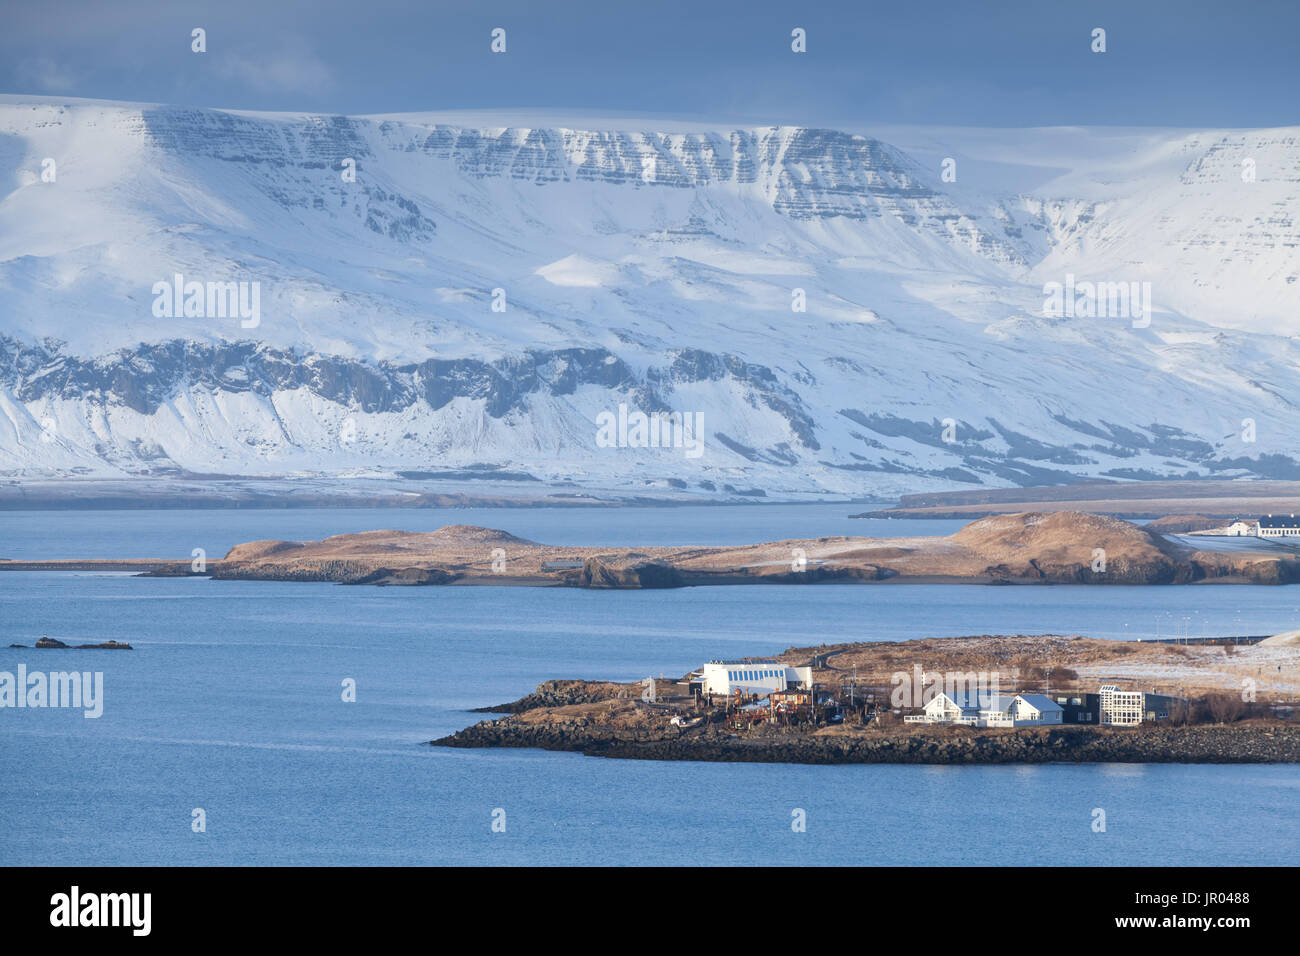 Icelandic paysage côtier. Montagnes enneigées sous ciel bleu foncé. District de Reykjavik, Islande Banque D'Images